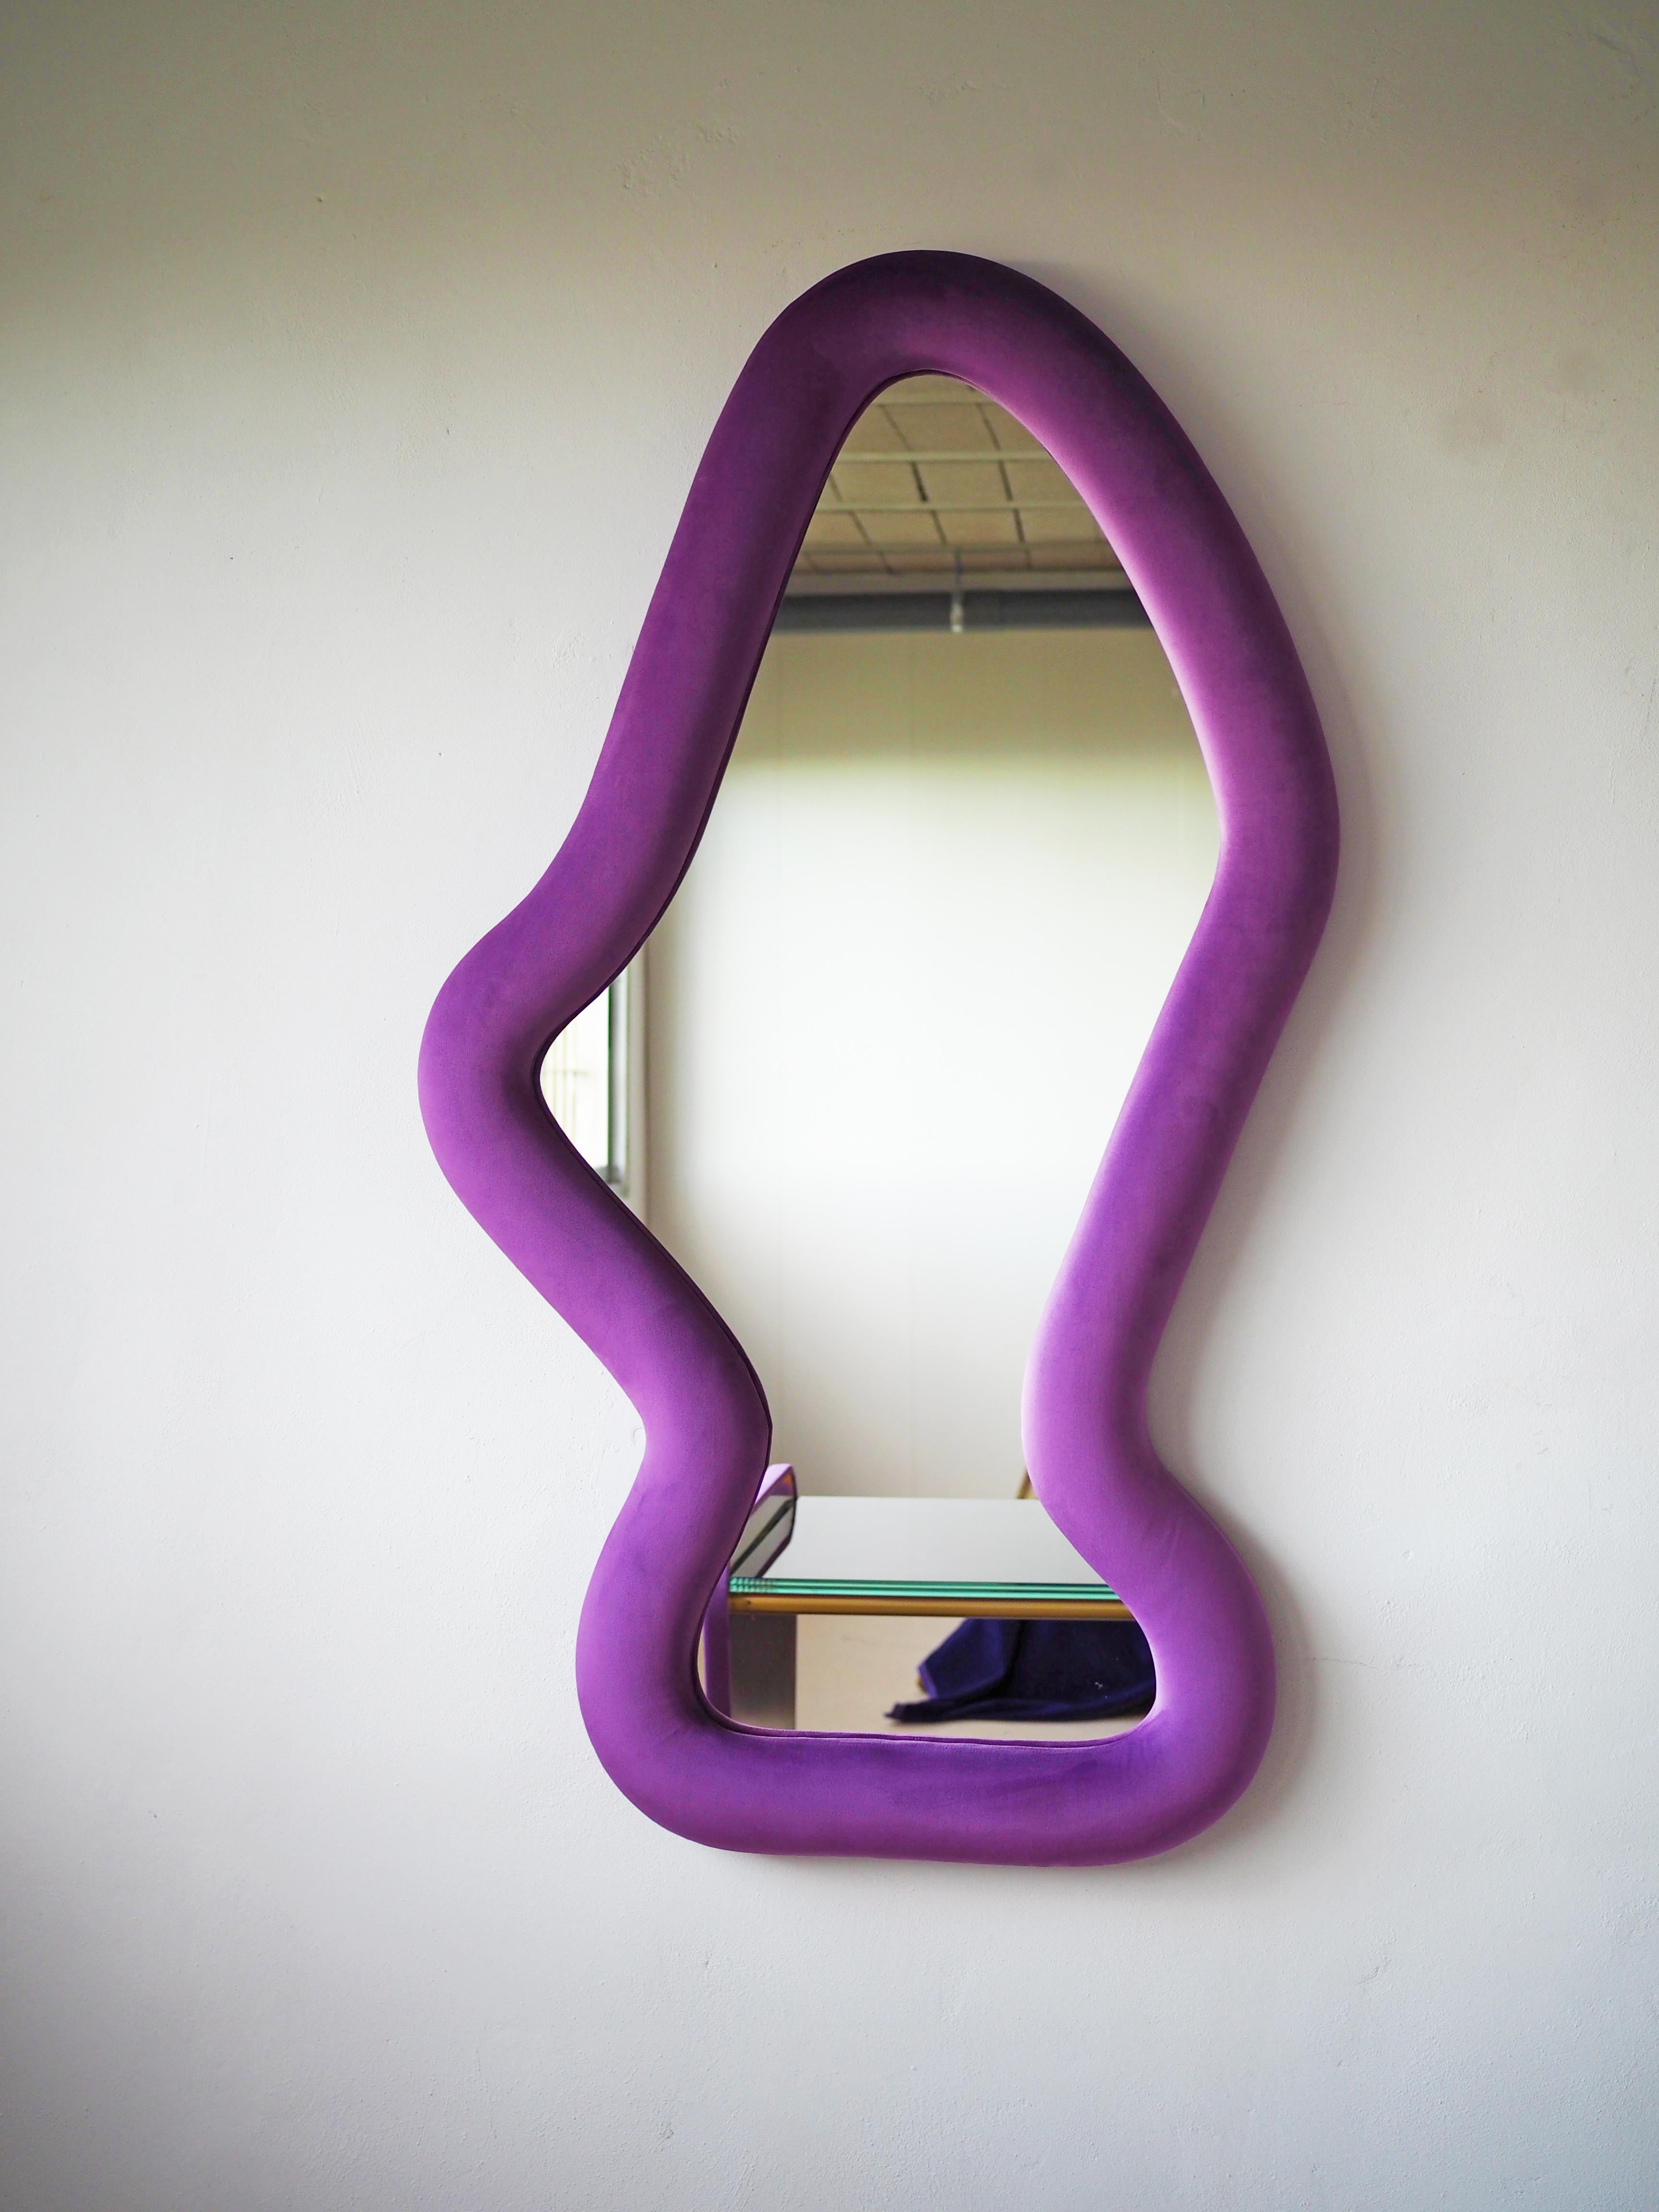 Miroir Bharani par Culto Ponsoda
Dimensions : D 8 x L 85 x H 156 cm
MATERIAL : Velours, bois, miroir.
Disponible dans d'autres couleurs.

Miroir multipositions avec cadre en bois. Rembourré et tapissé de velours.

